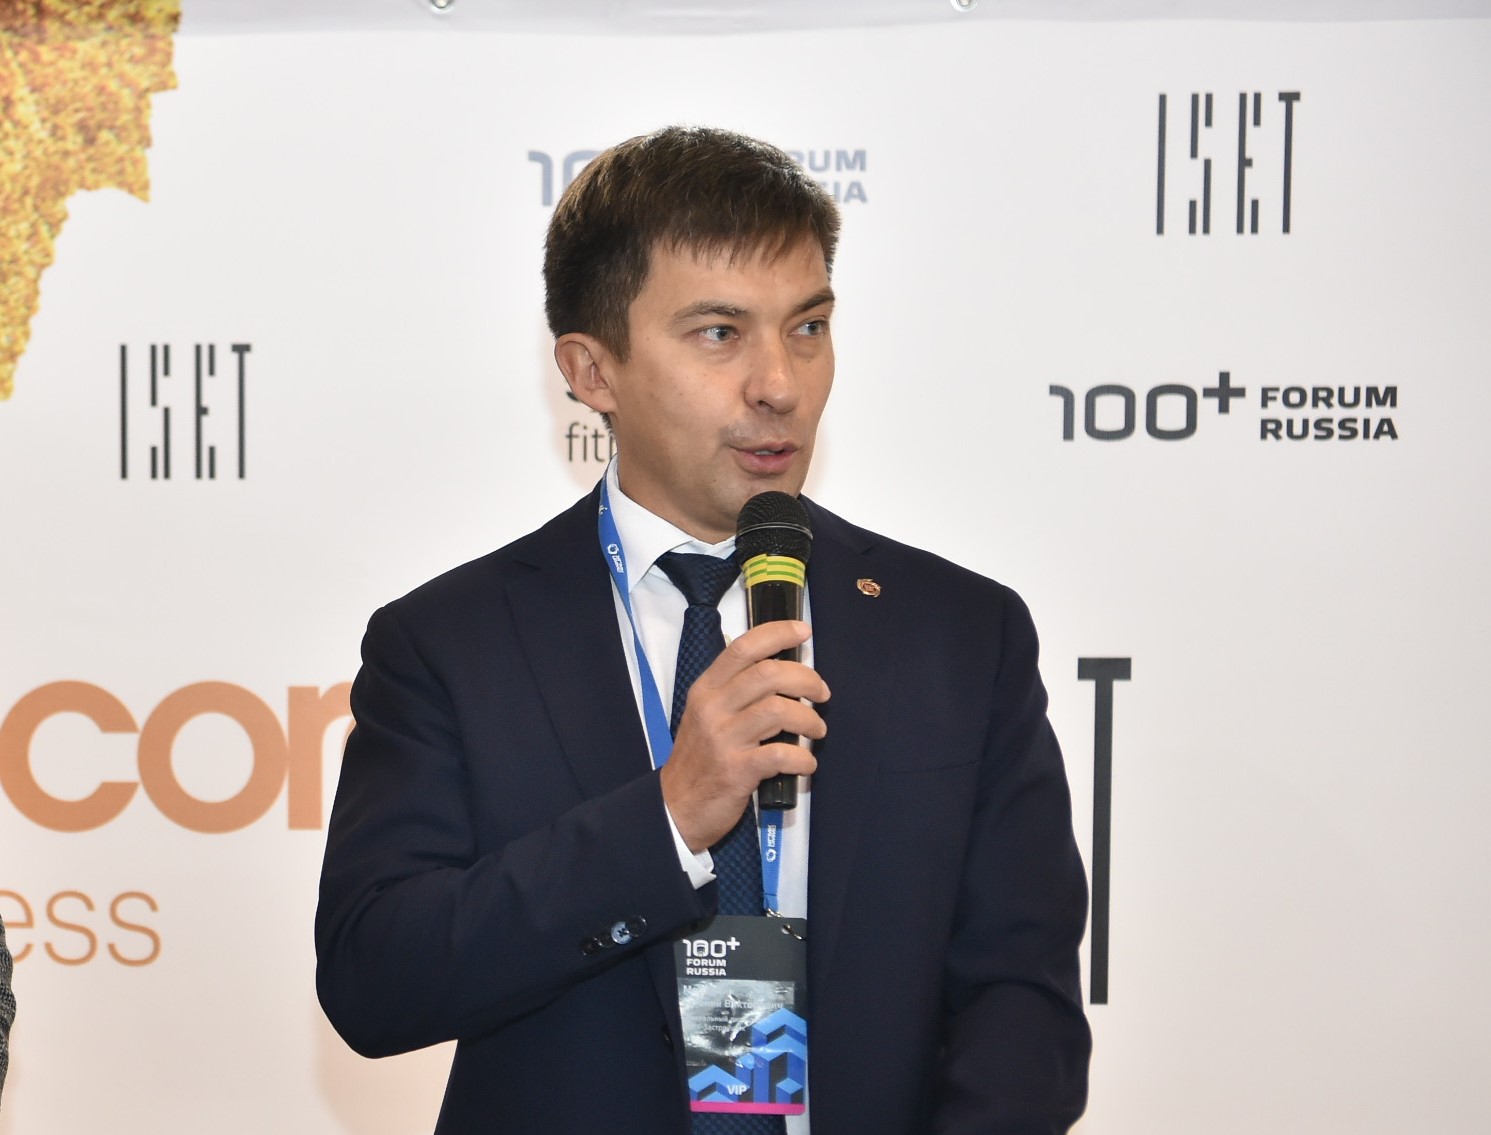 Спорт «на высоте» и оценка коллег: строители УГМК приняли участие в форуме «100+ Forum Russia»